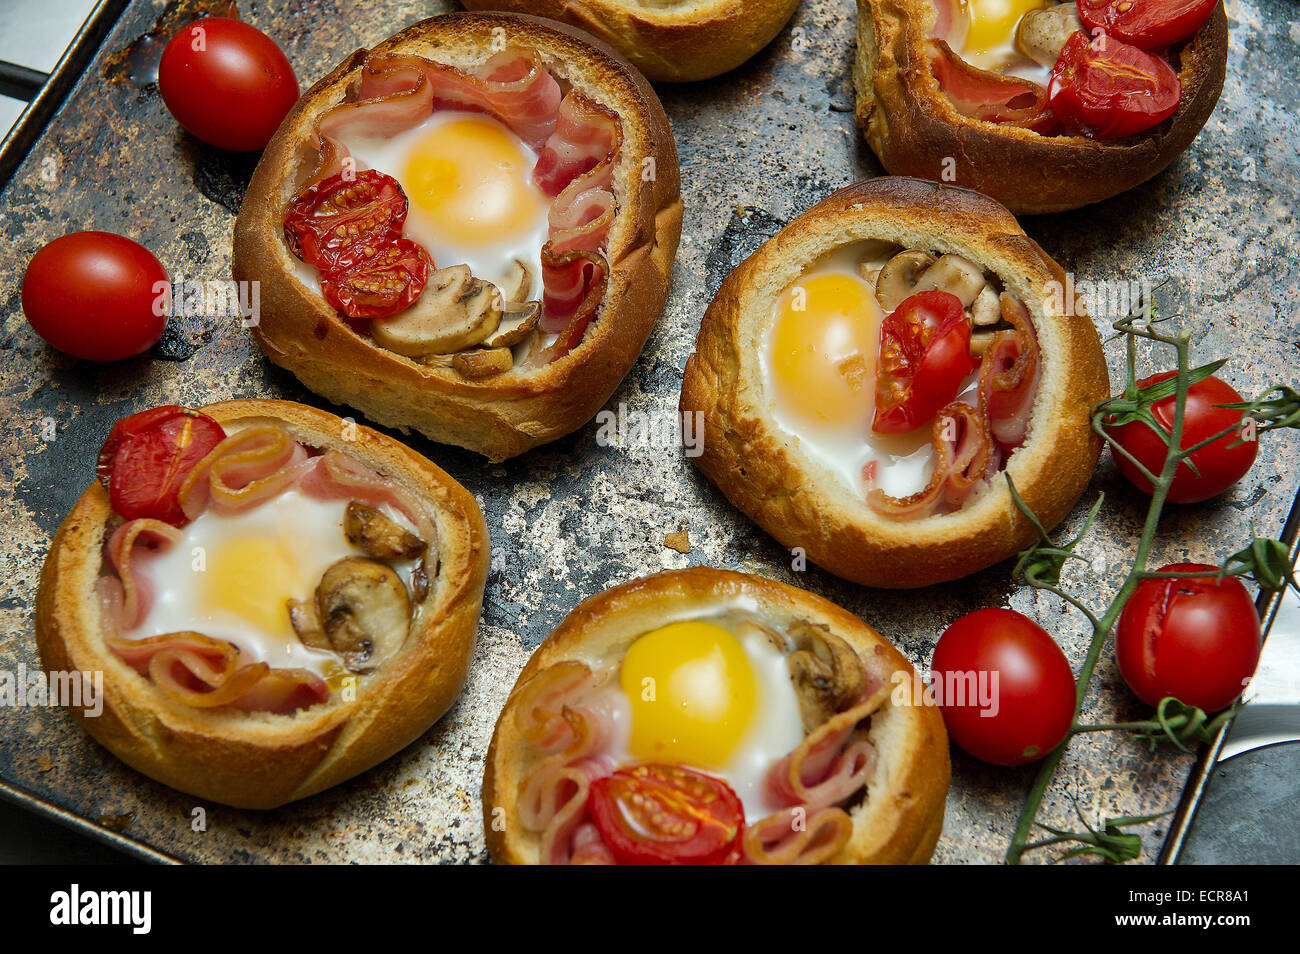 La colazione baps/panini con uova, bacon, funghi e pomodoro Foto Stock